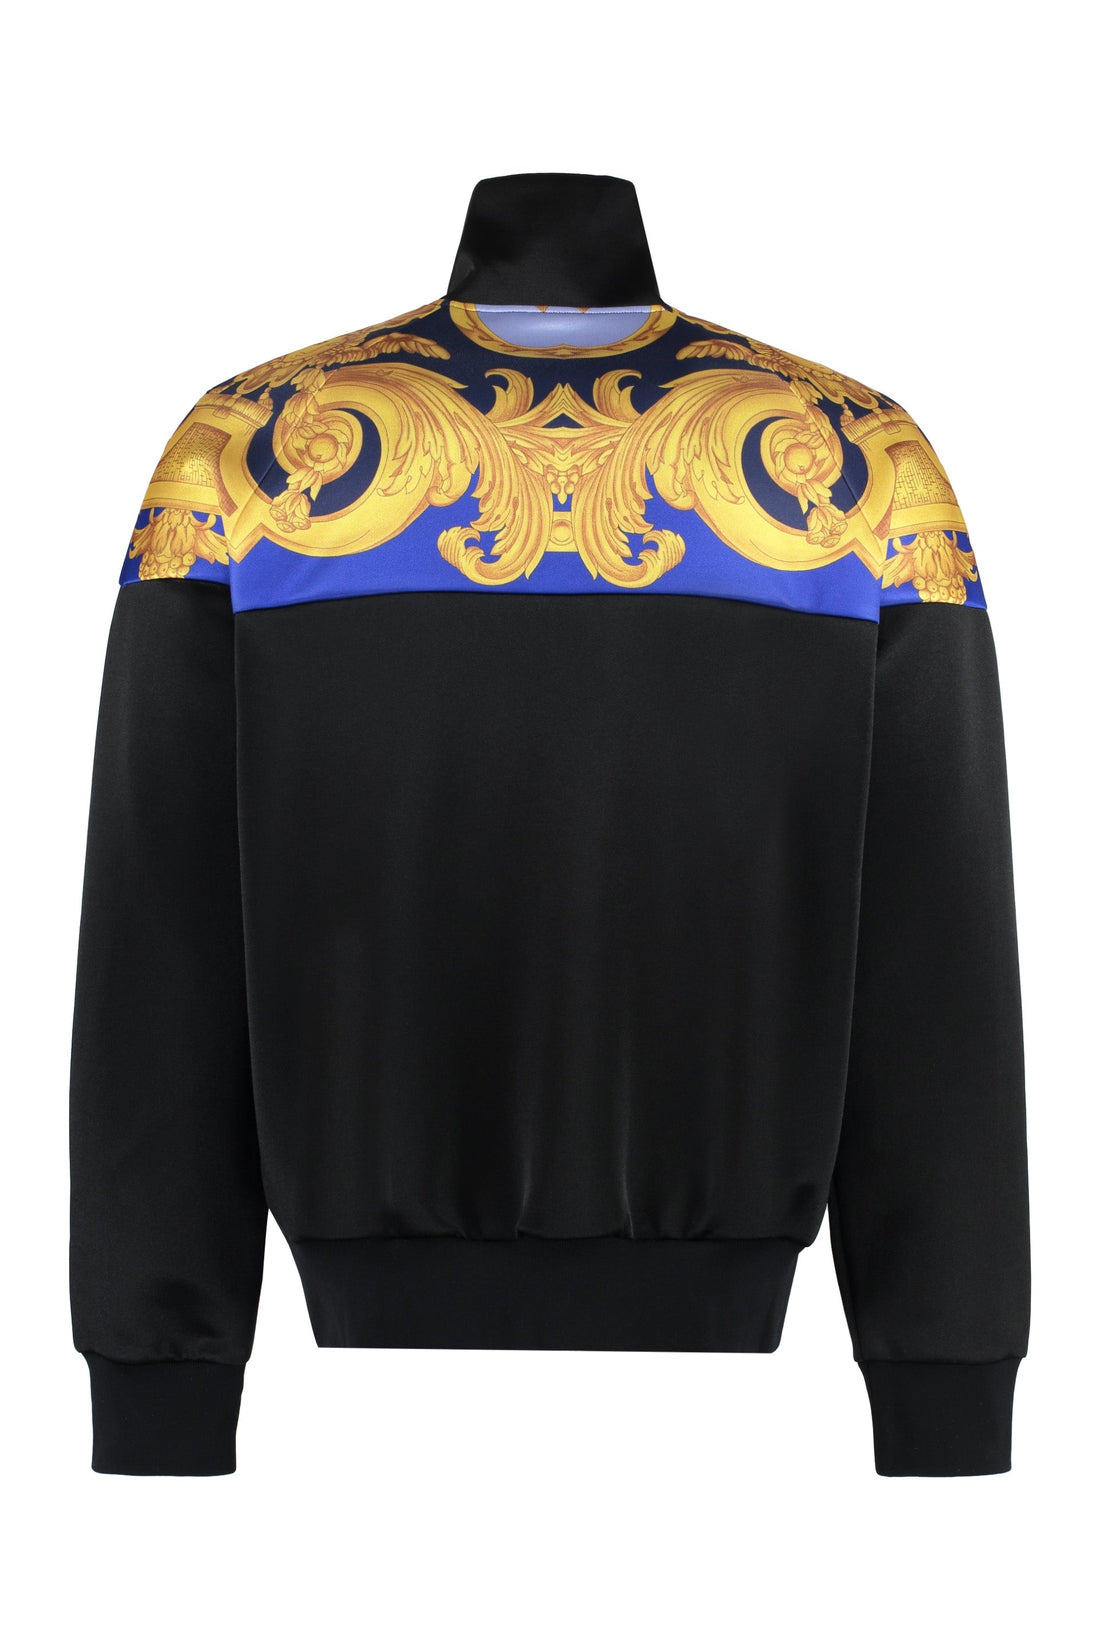 Versace-OUTLET-SALE-Techno fabric sweatshirt-ARCHIVIST